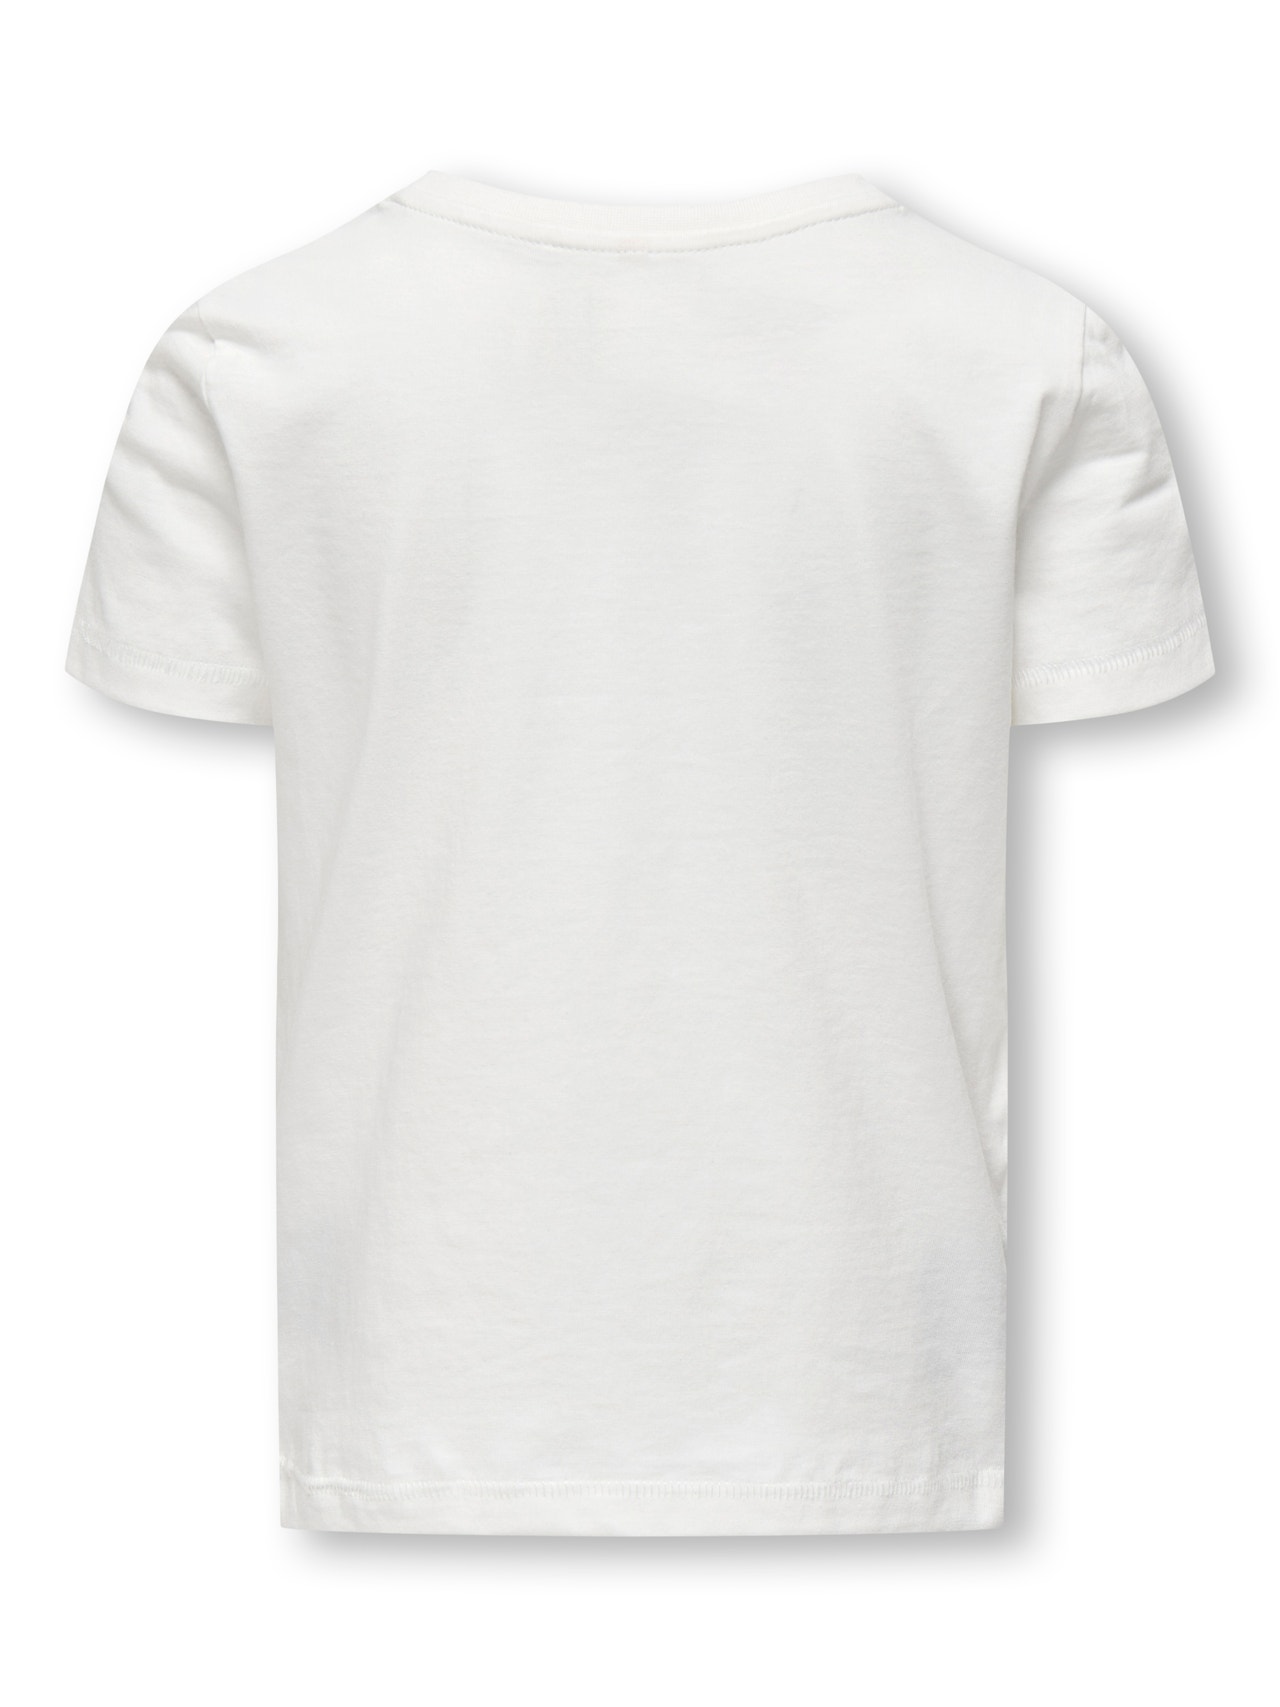 ONLY o-hals t-shirt -Cloud Dancer - 15296737